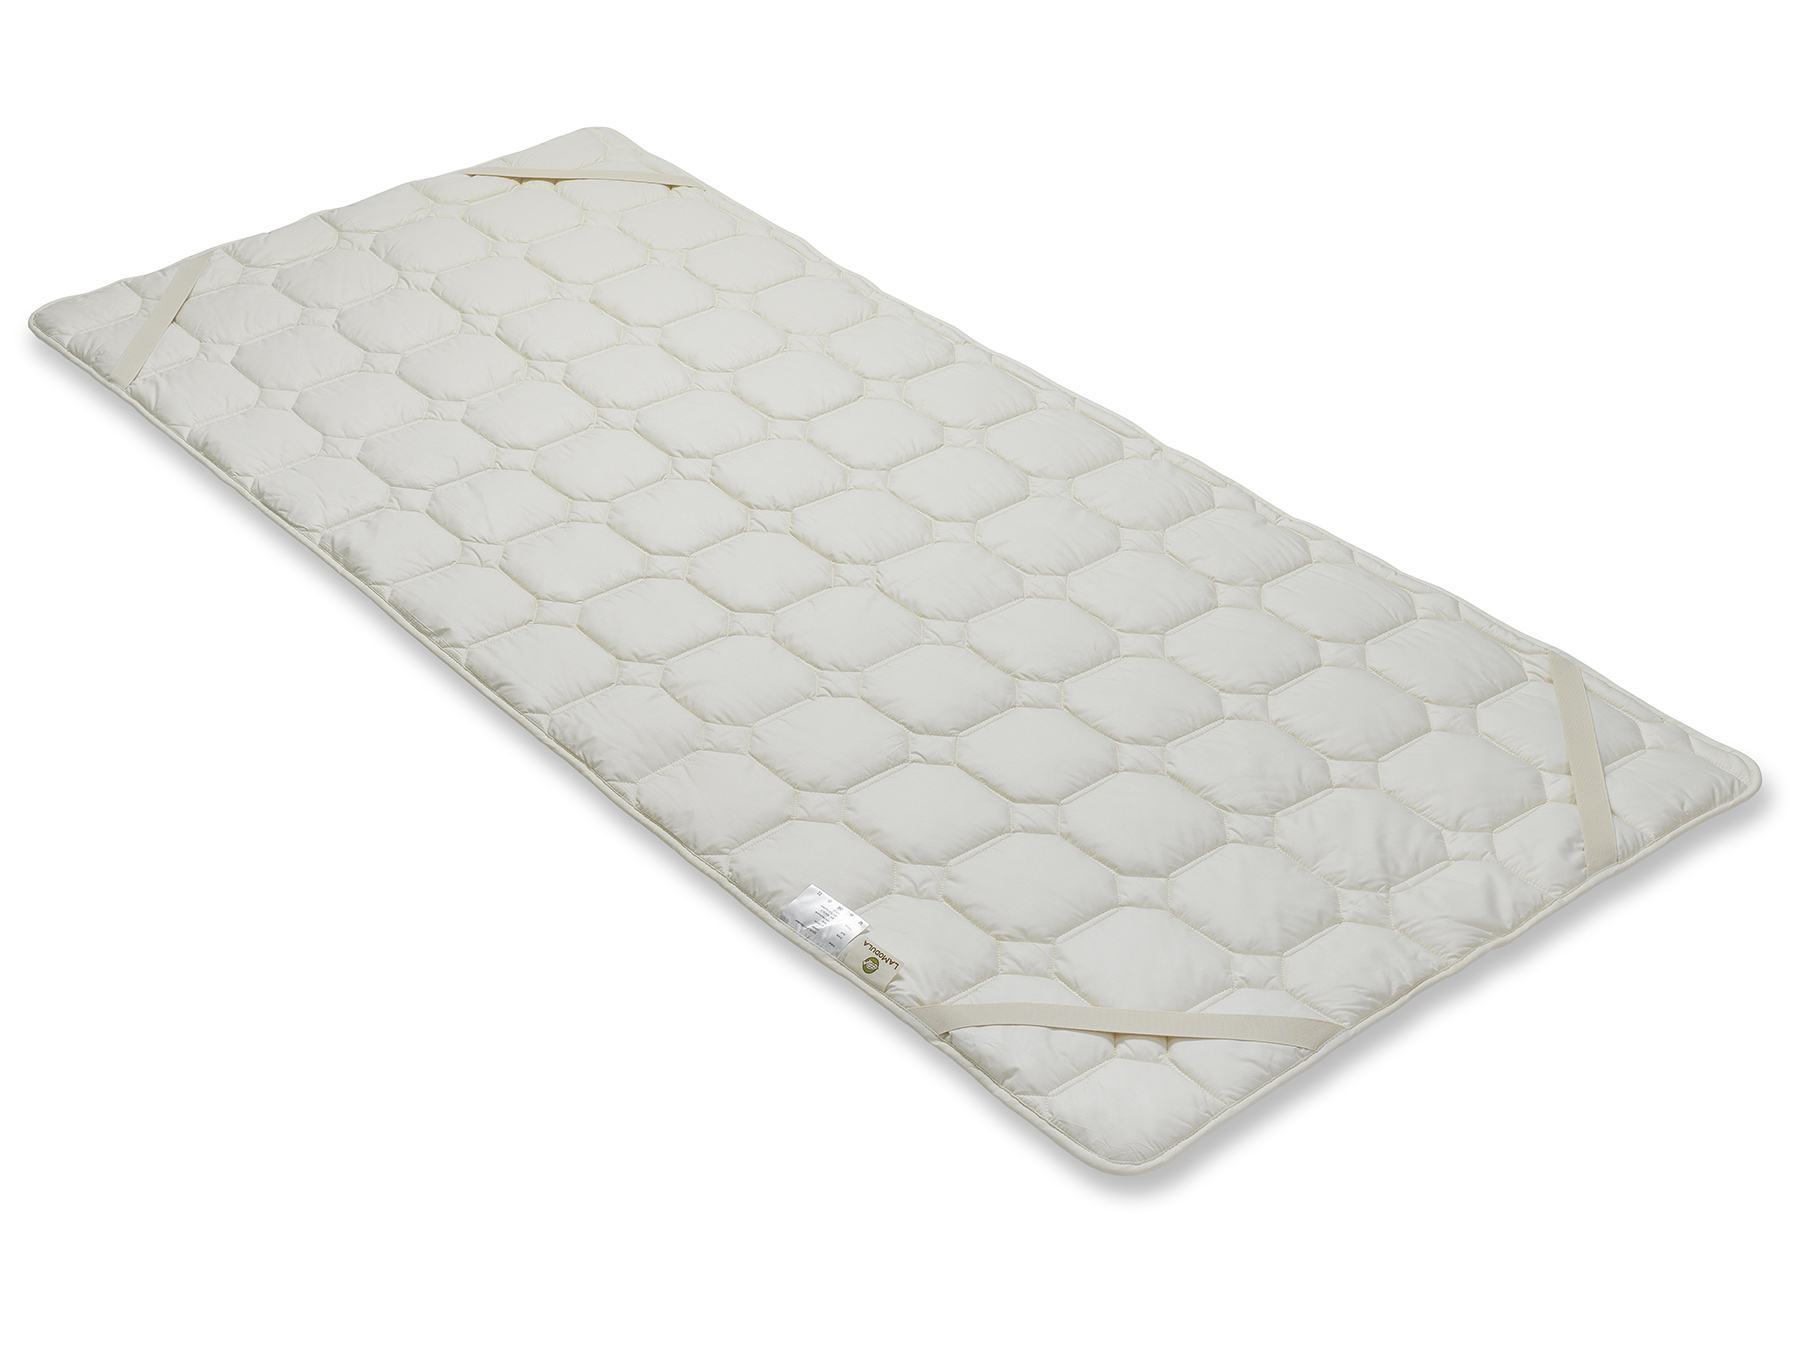 Mit vier Schräggummibändern kann das Unterbett an der Matratze befestigt werden. 